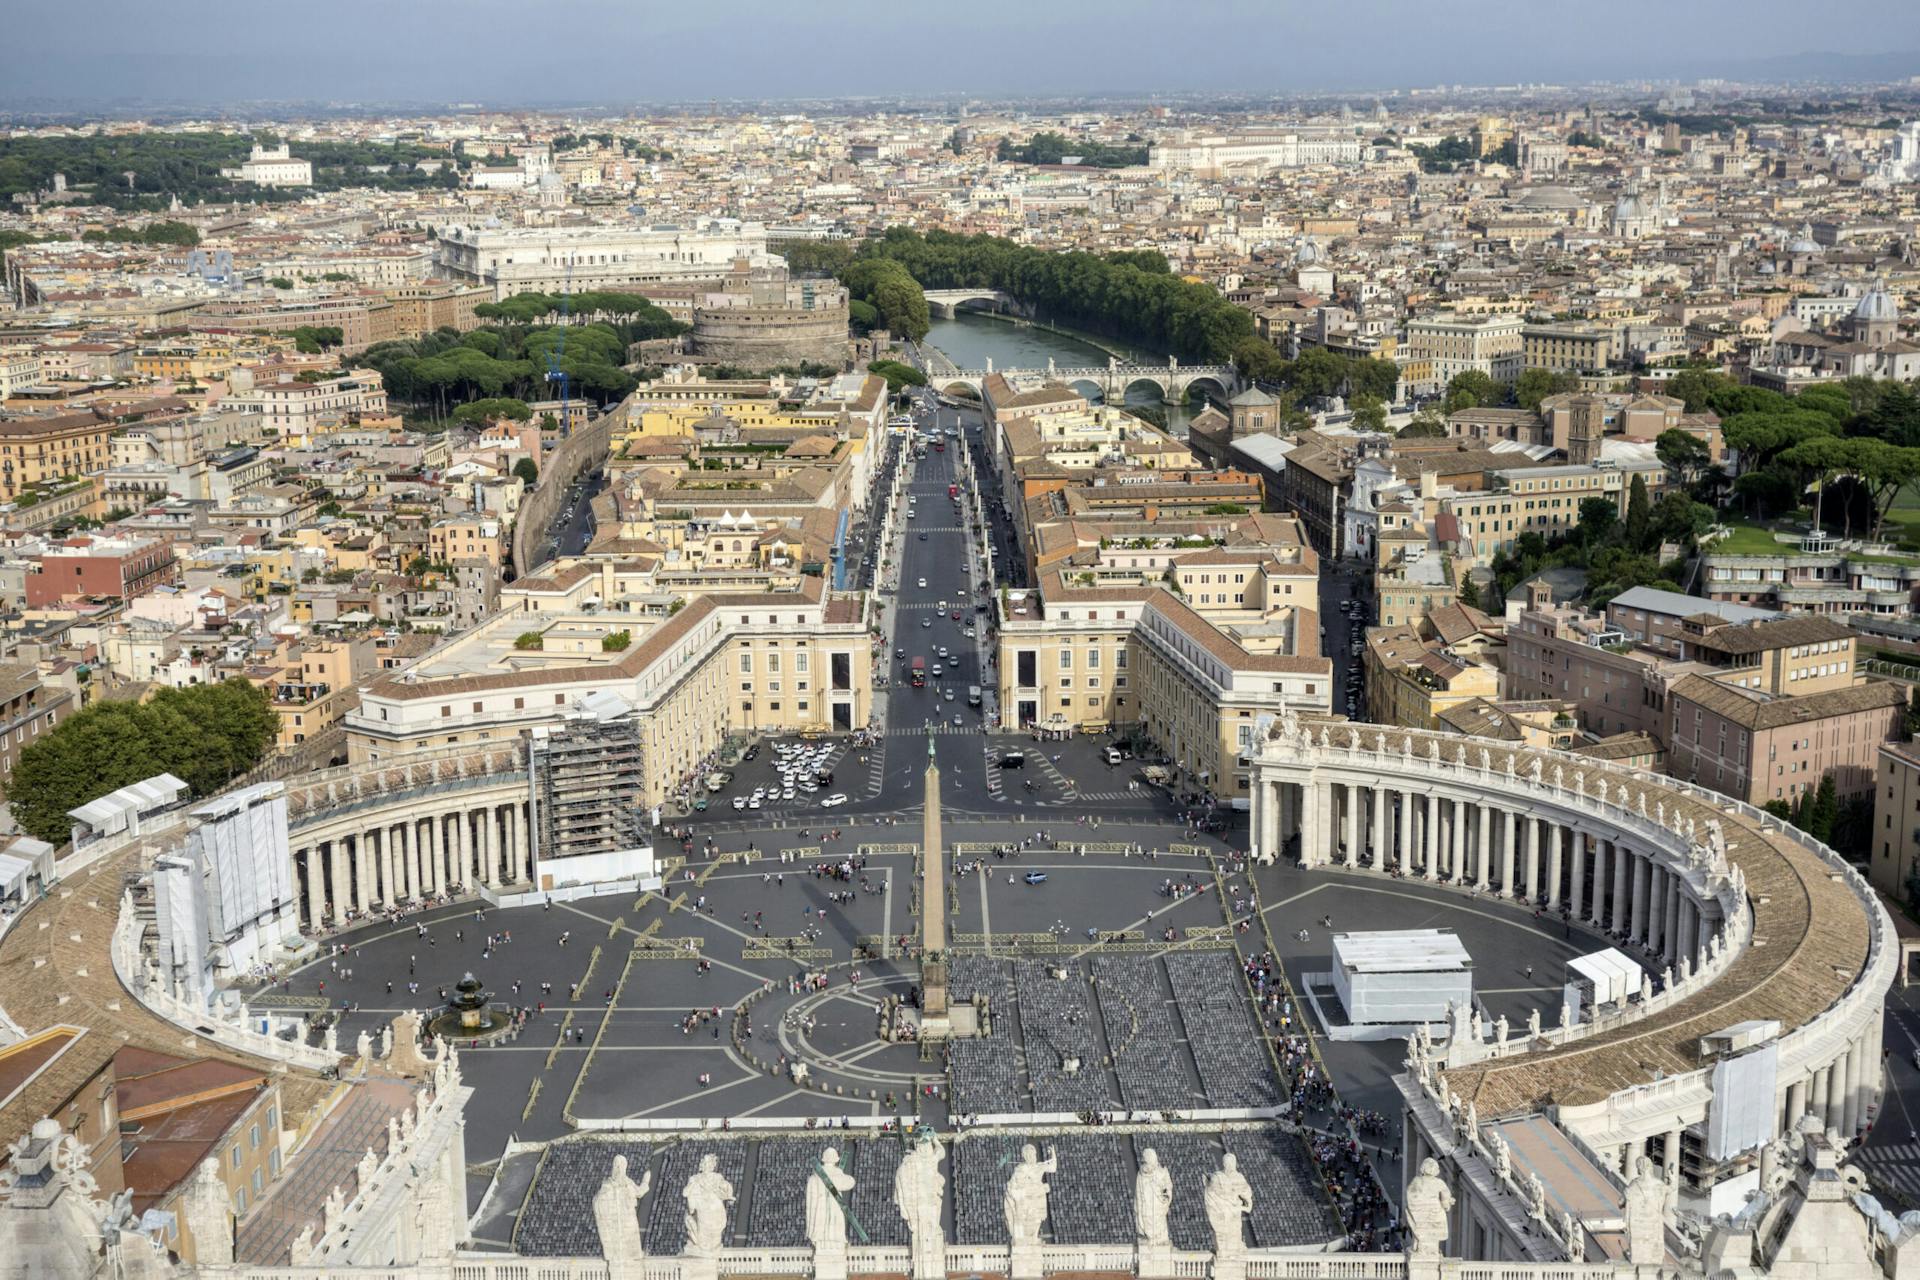 Ilmanäkymä kaupungista, näkymässä näkyy Pietarinaukio mikä on kaupunginaukio Vatikaanissa